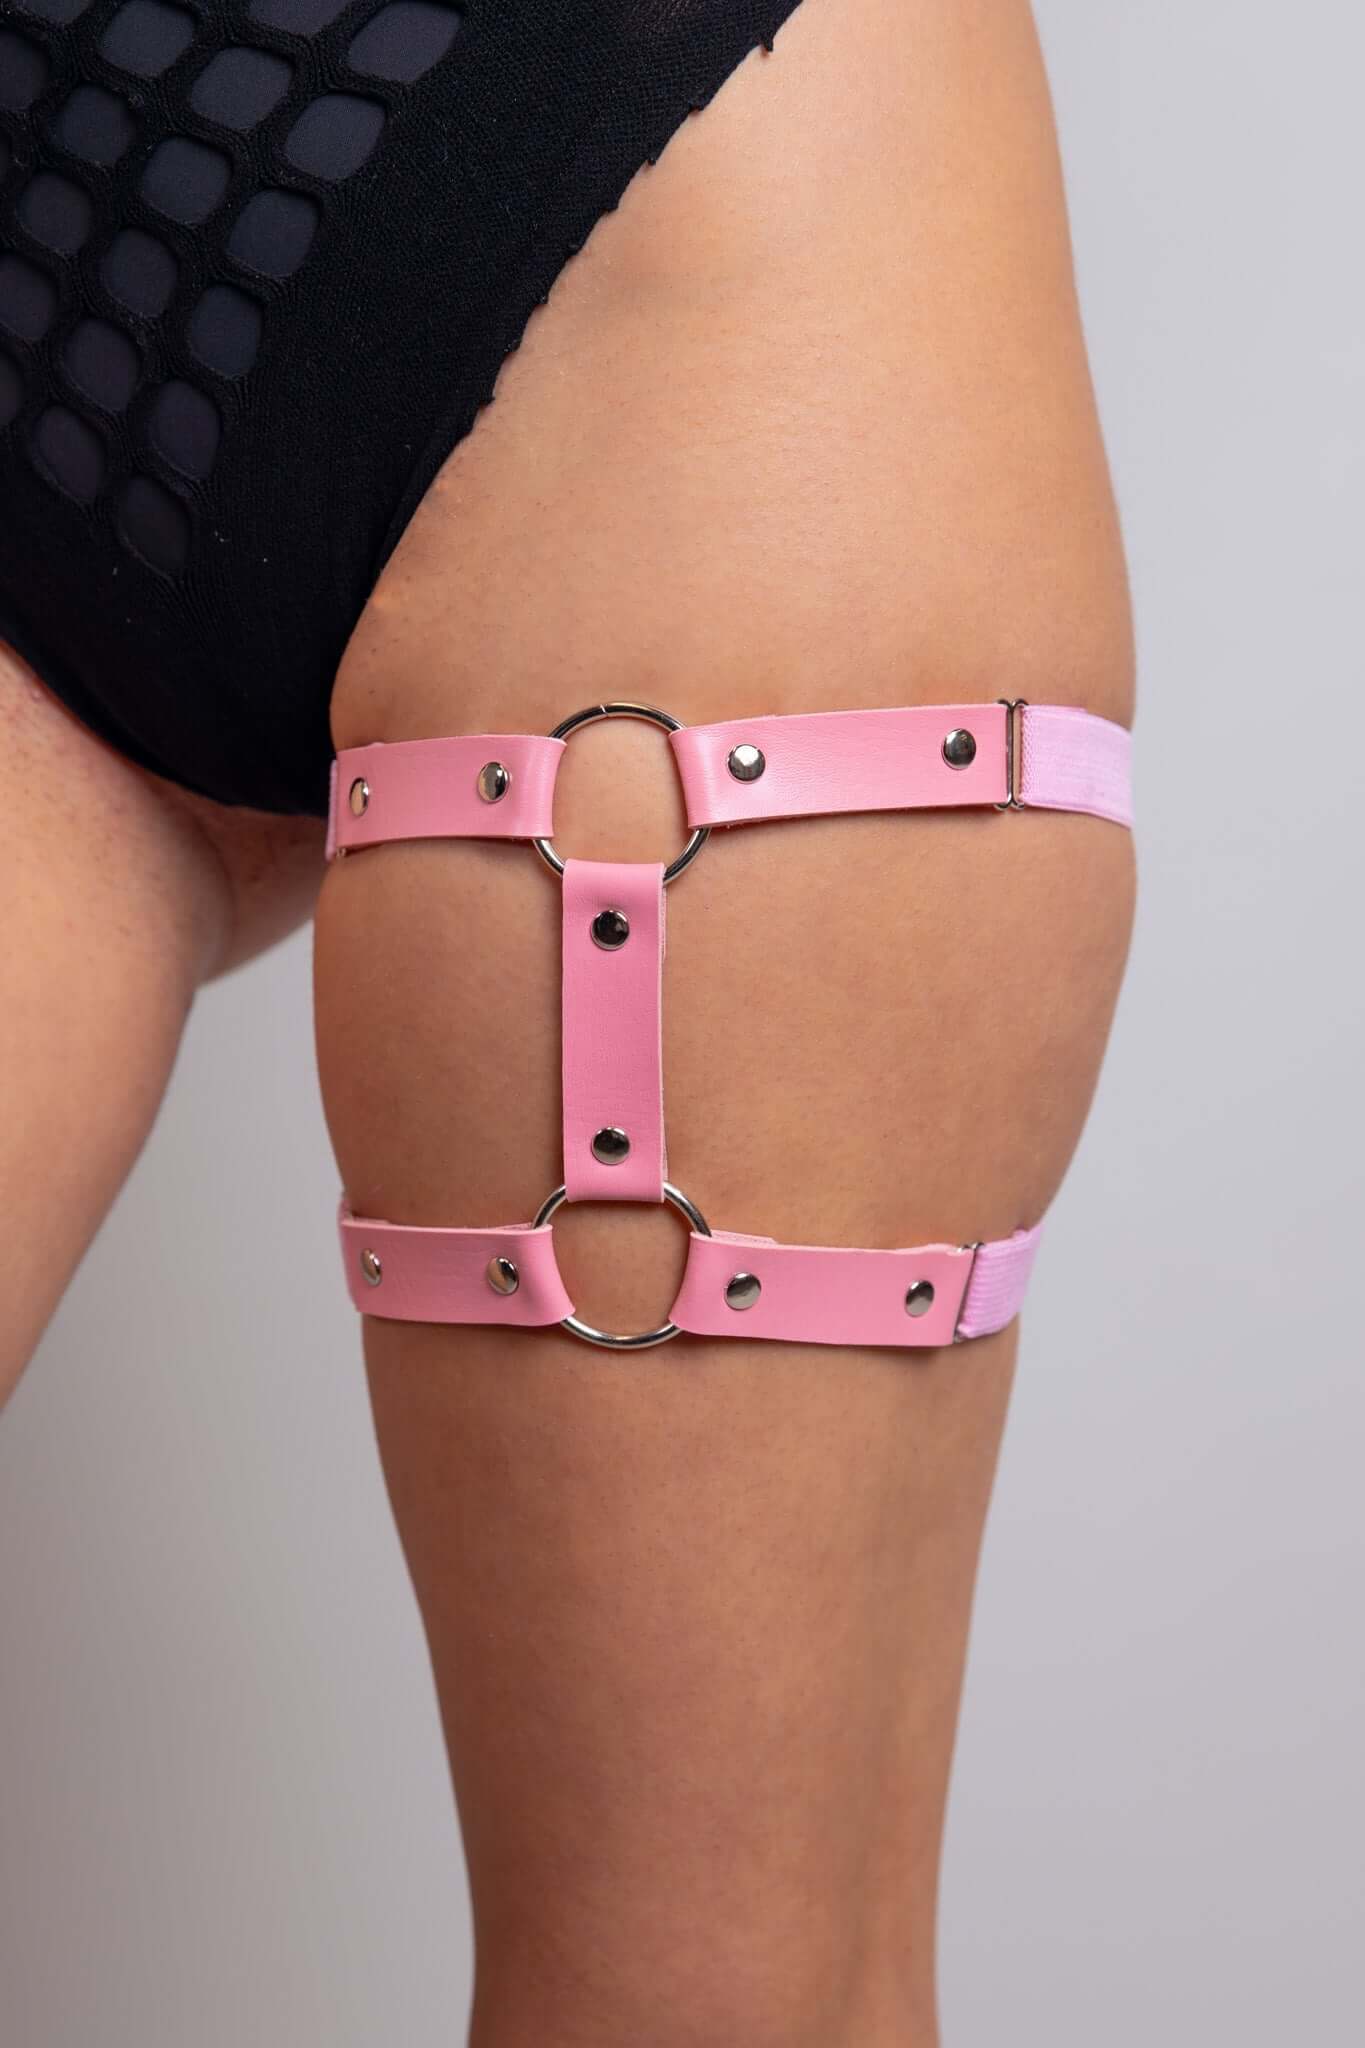 Leather Adjustable Leg Garter - Light Pink - Freedom Rave Wear - Harnesses